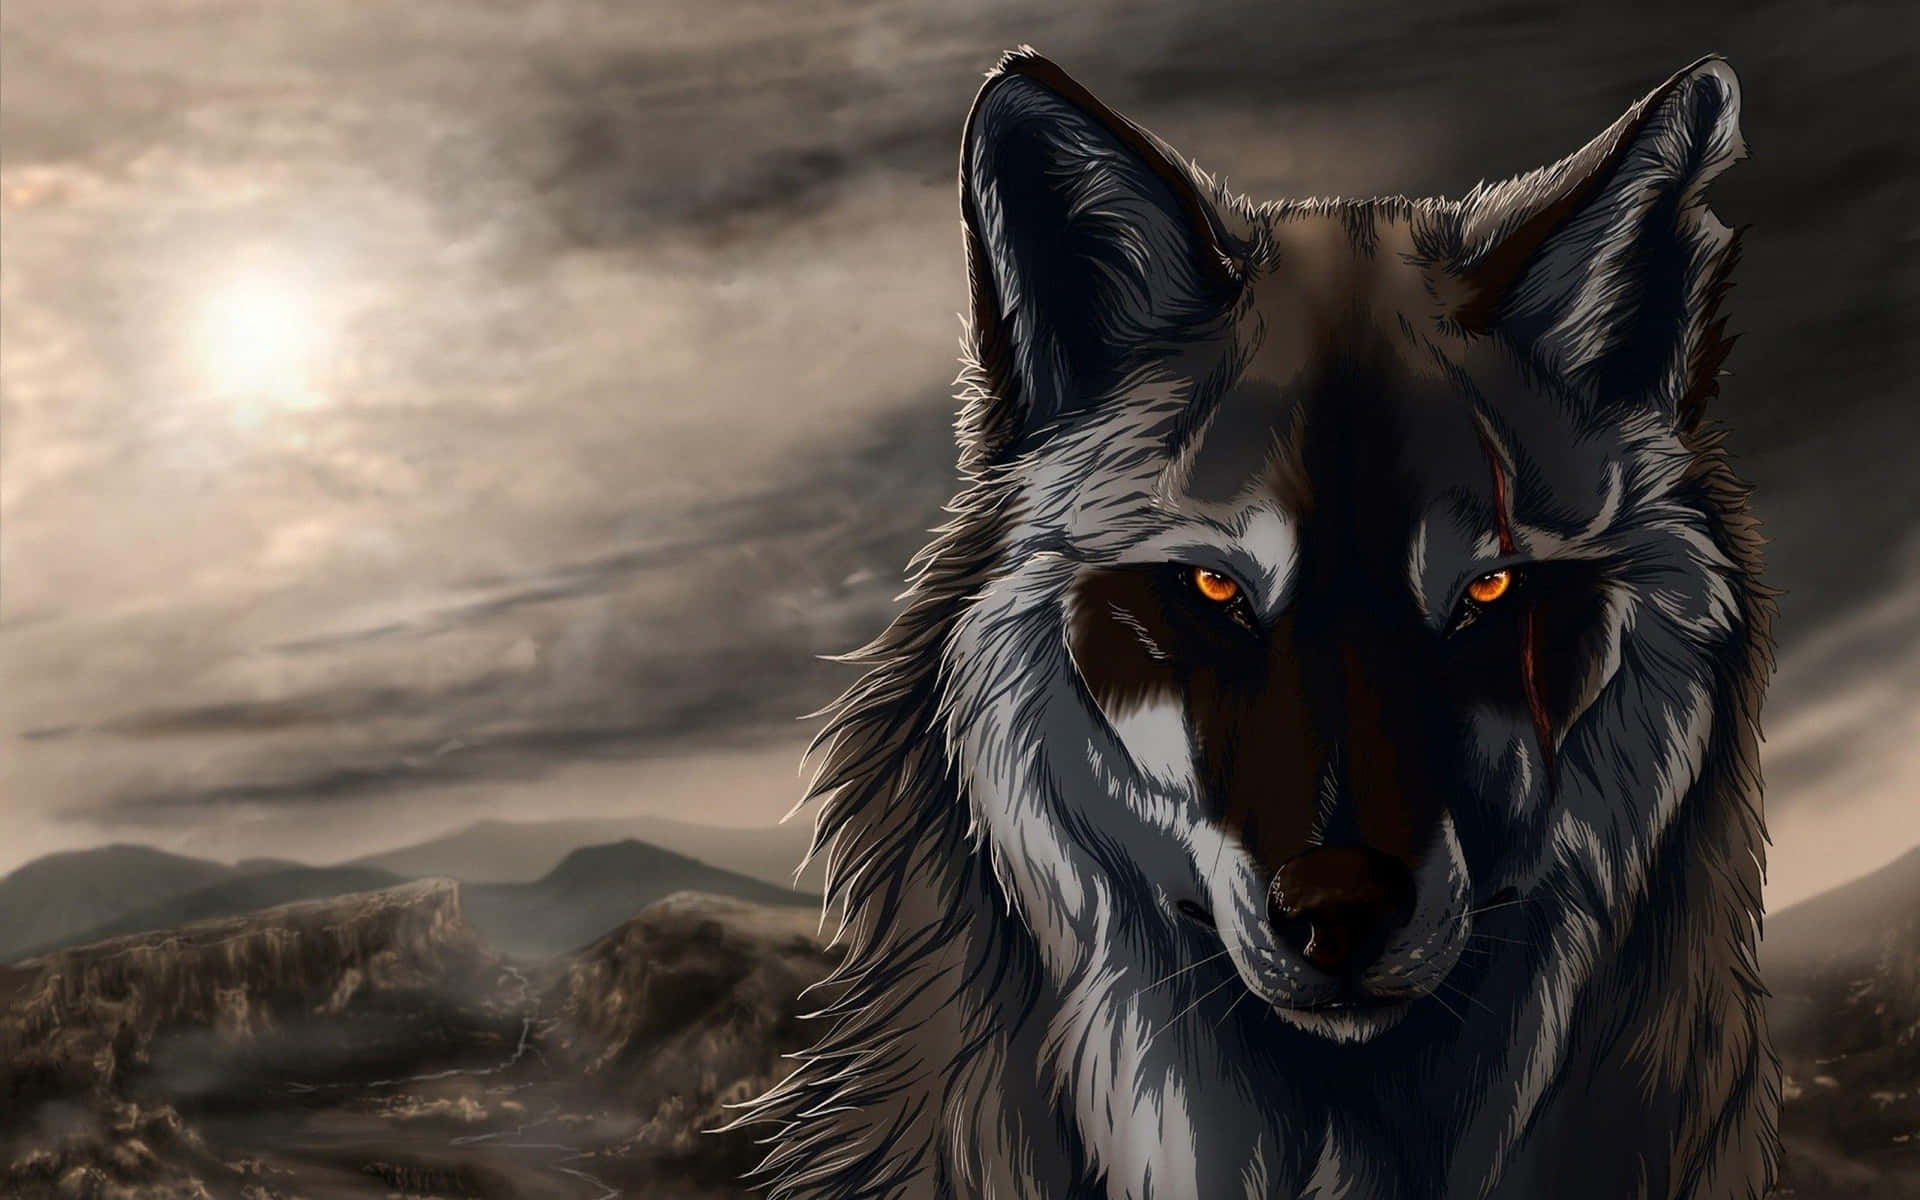 En cool anime ulv stående majestætisk mod en mørk måneoplyst himmel. Wallpaper